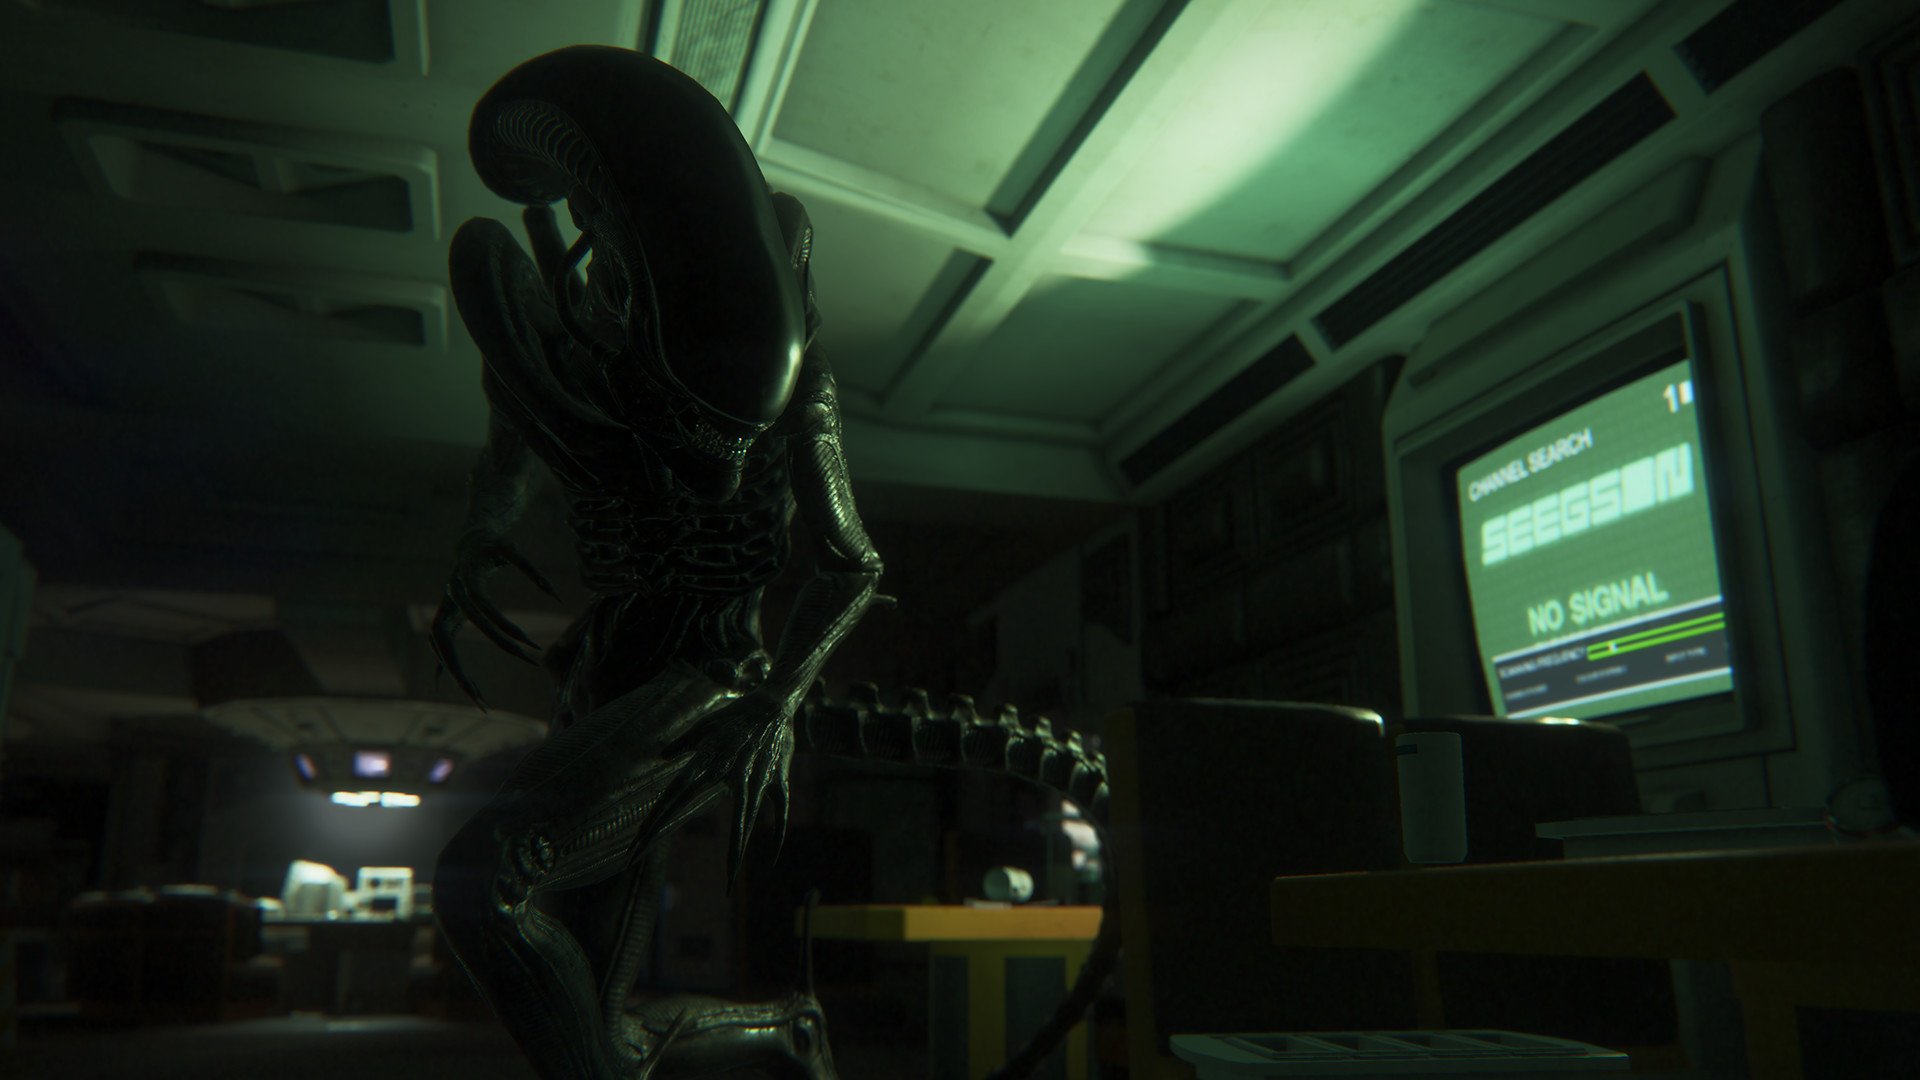 Se seguir a qualidade de Alien, o novo jogo será espetacular